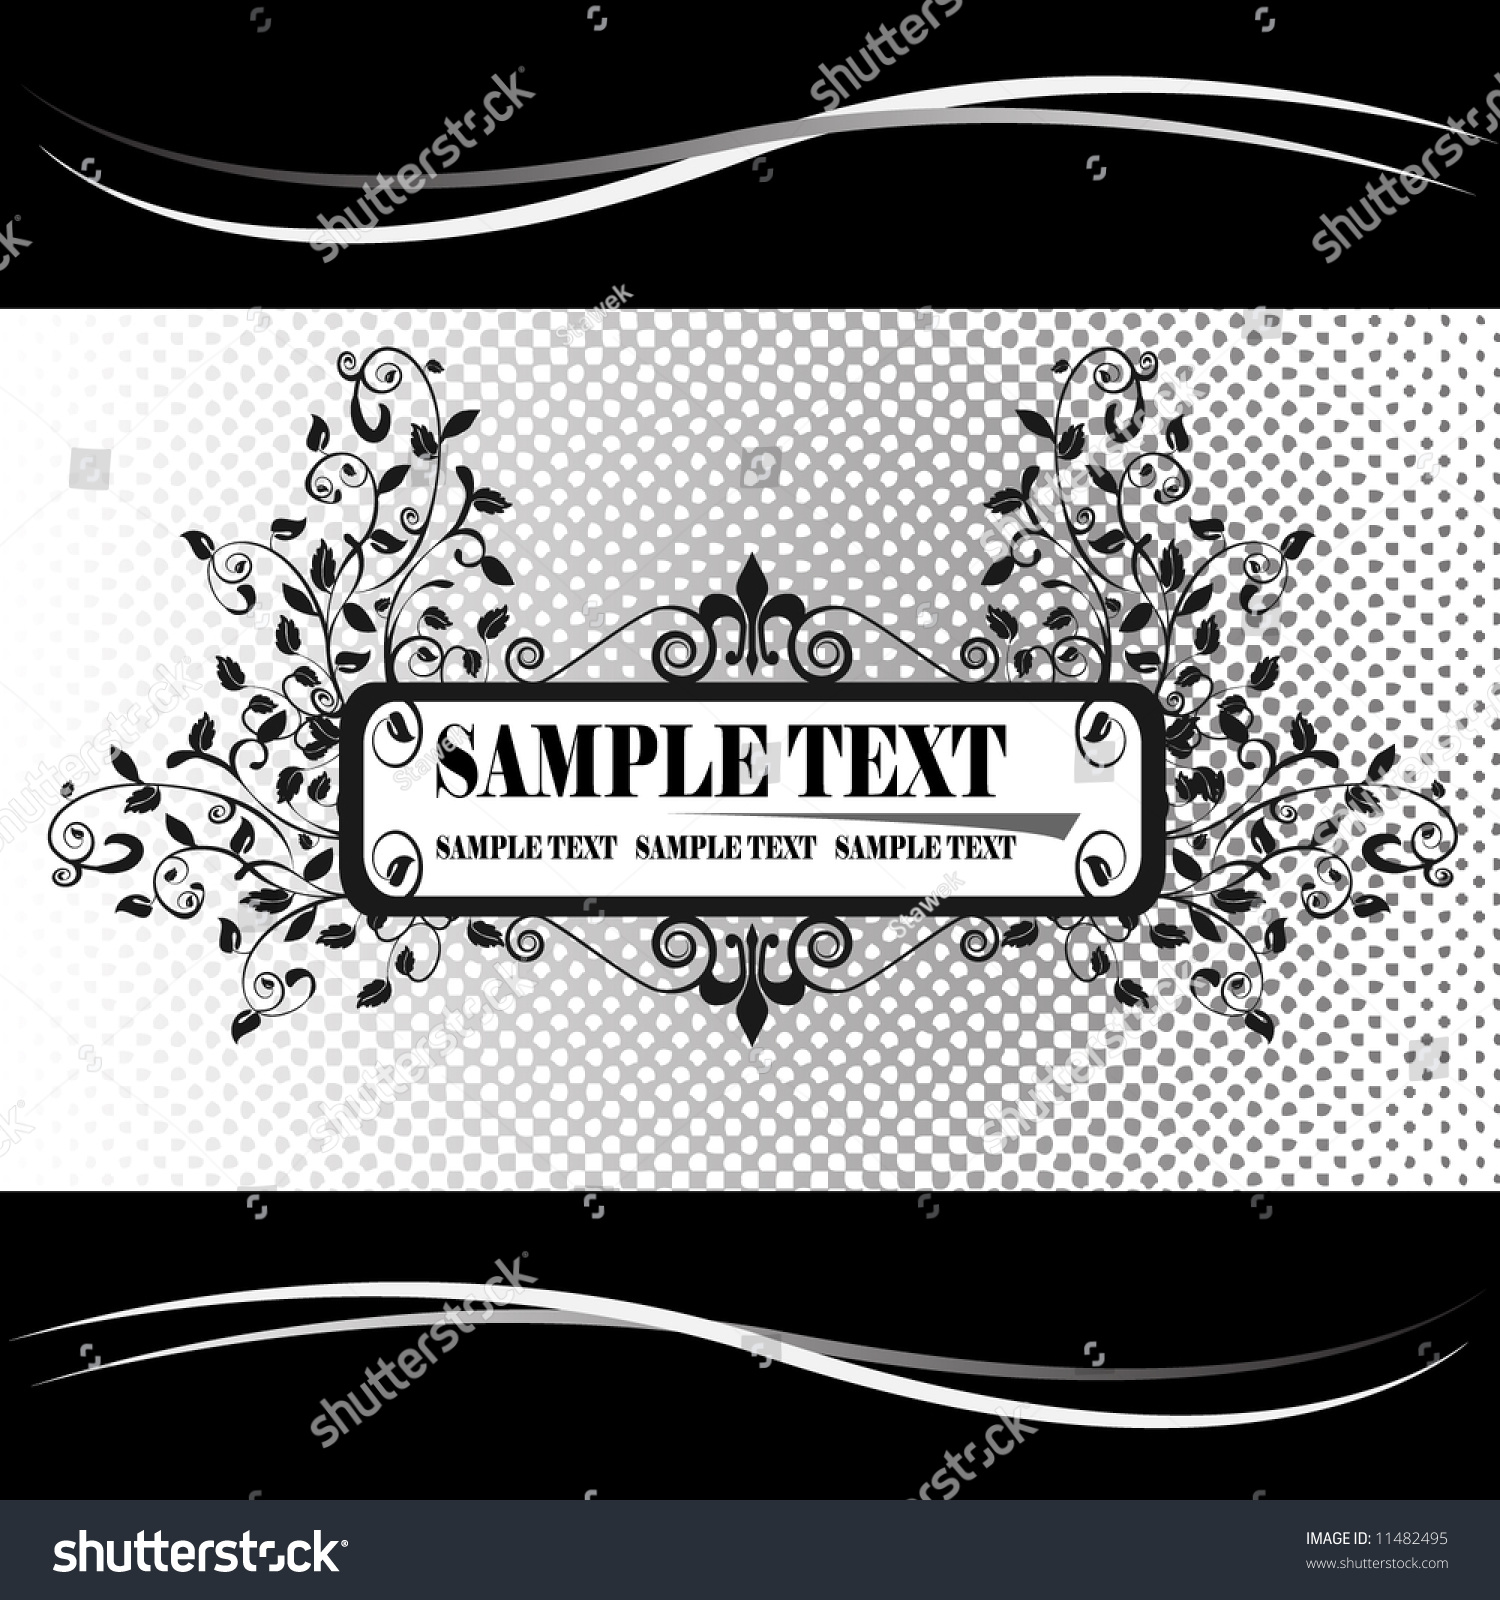 Black And White Banner Stock Vector Illustration 11482495 : Shutterstock